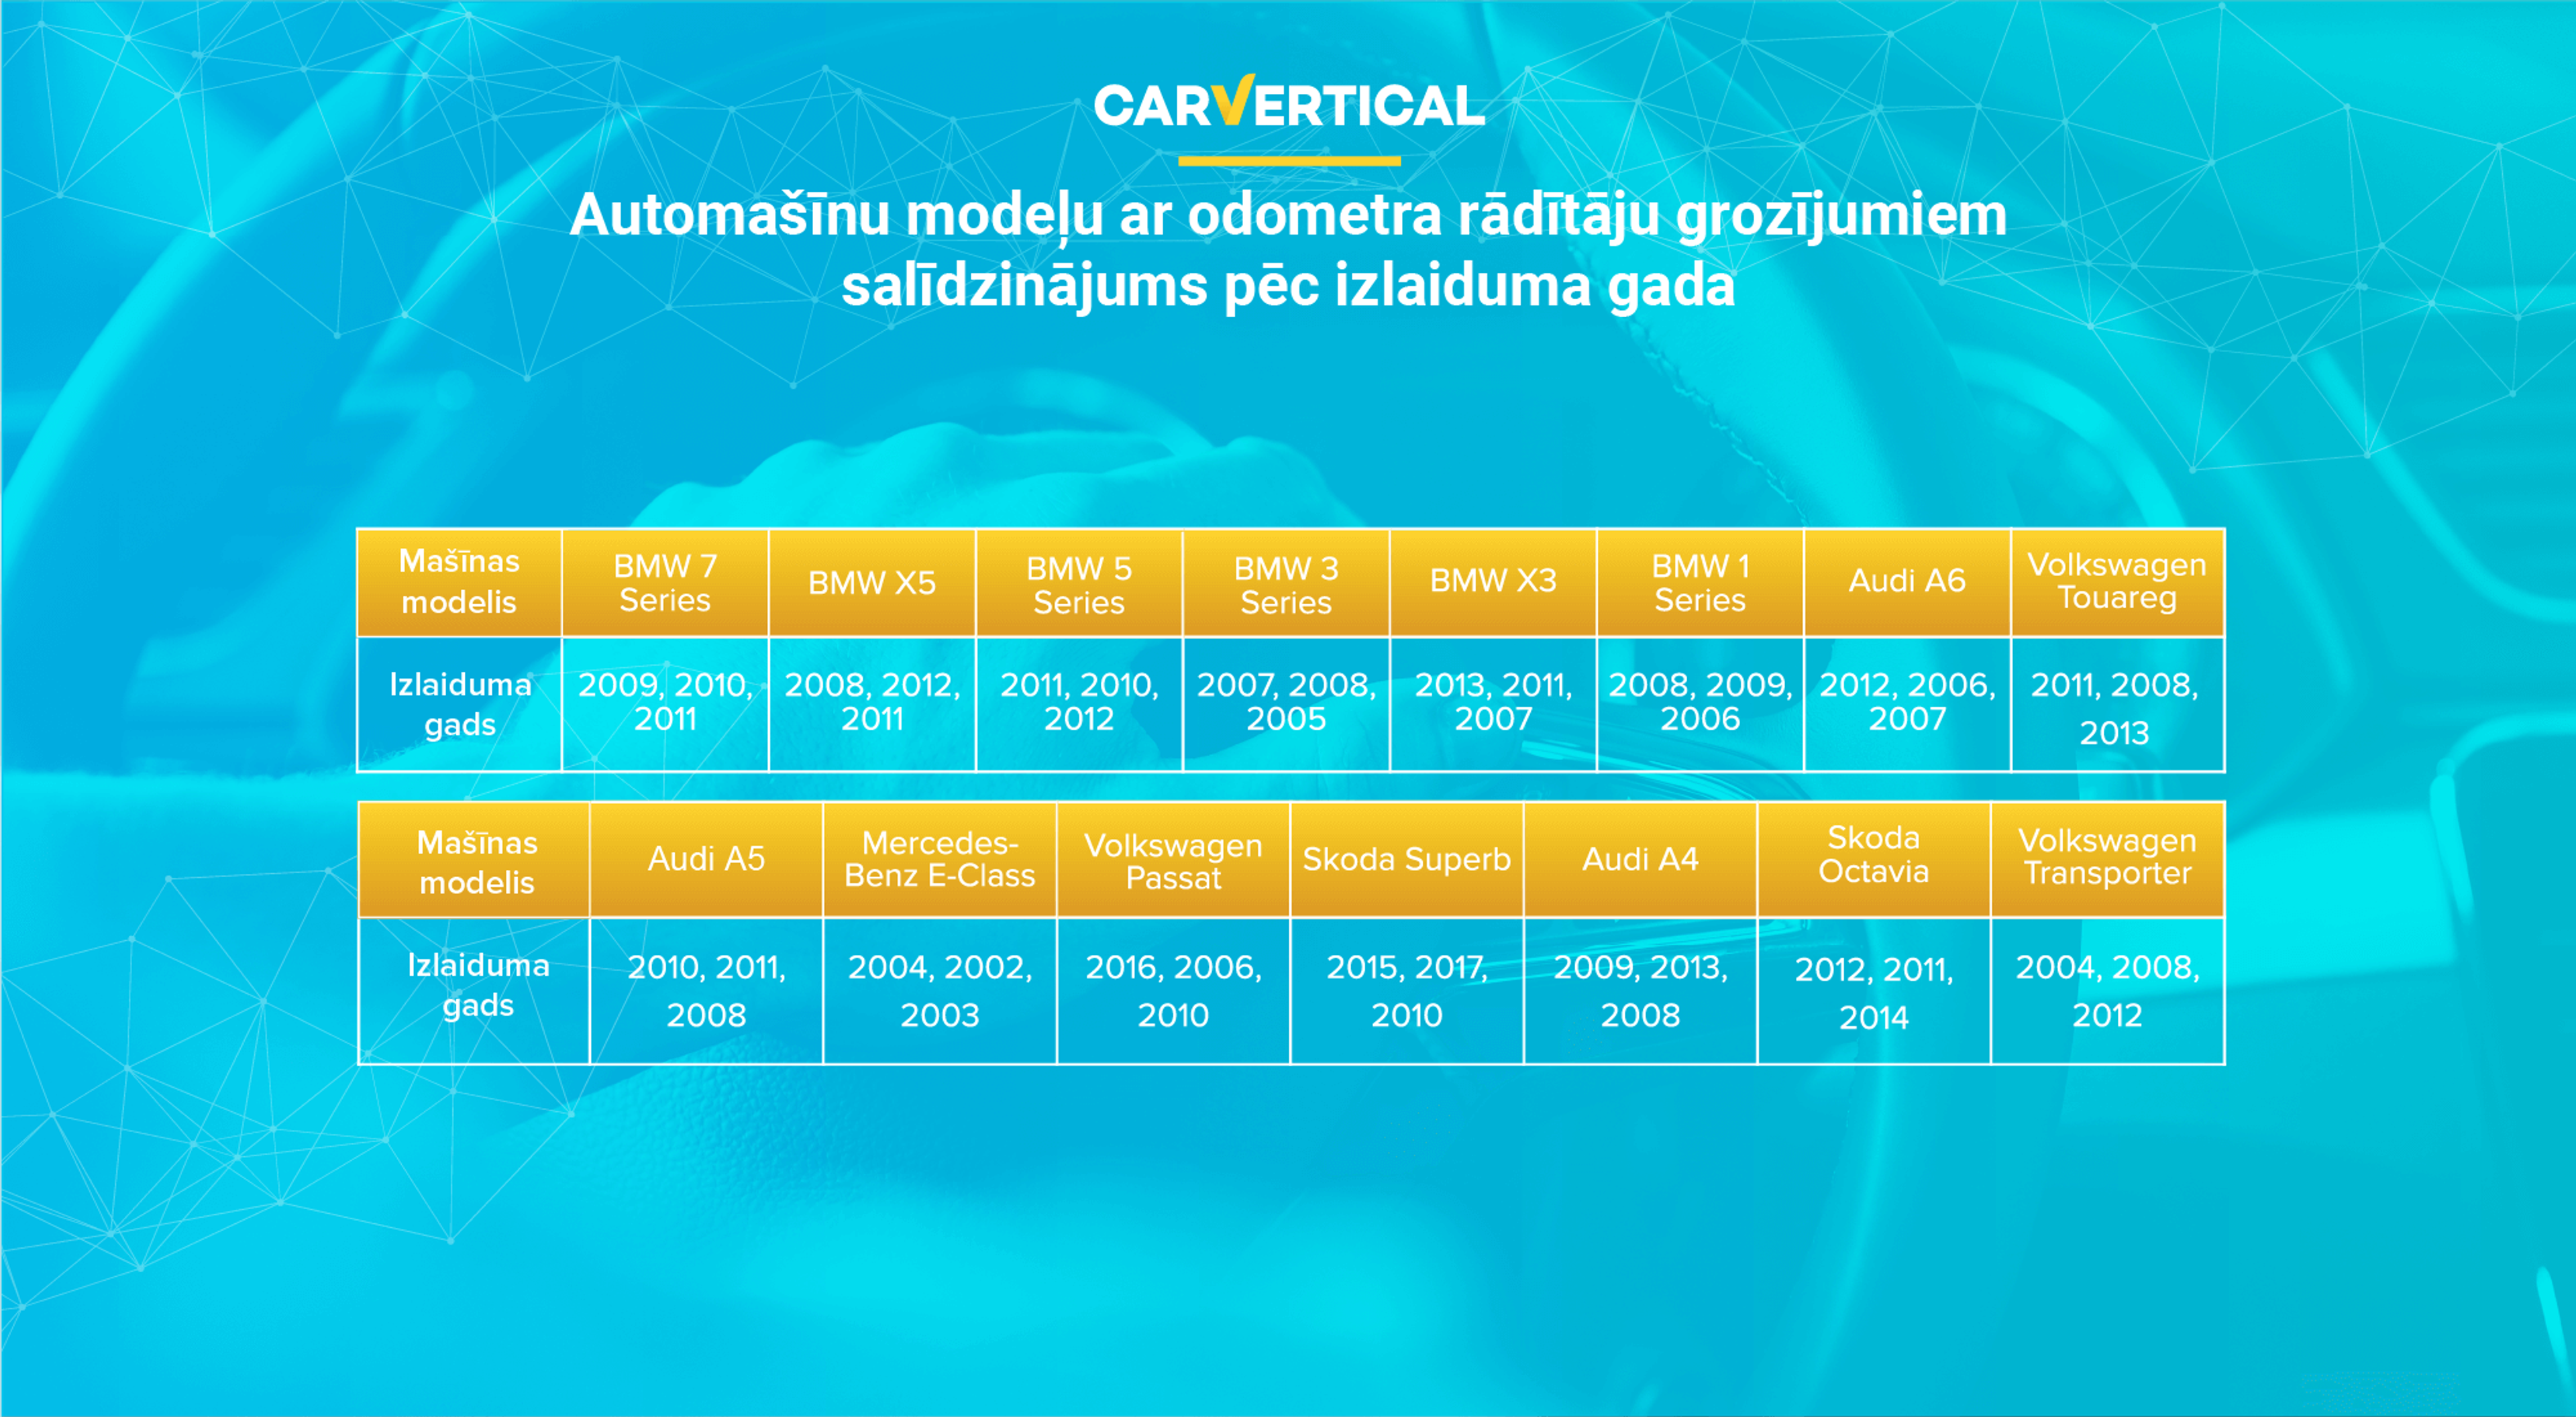 Automašīnu modeļu ar odometra rādītāju grozījumiem salīdzinājums pēc izlaiduma gada